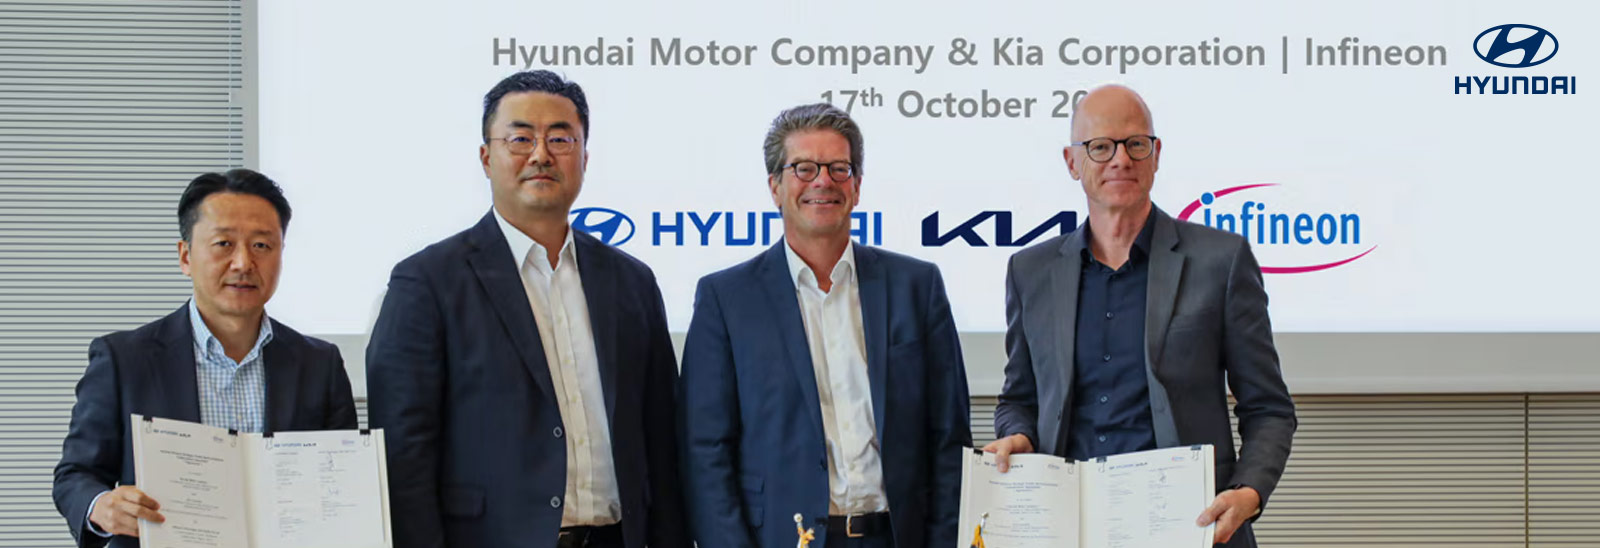 Ejecutivos de Hyundai Motor y la KIA mostrando carpetas con acuerdo comercial